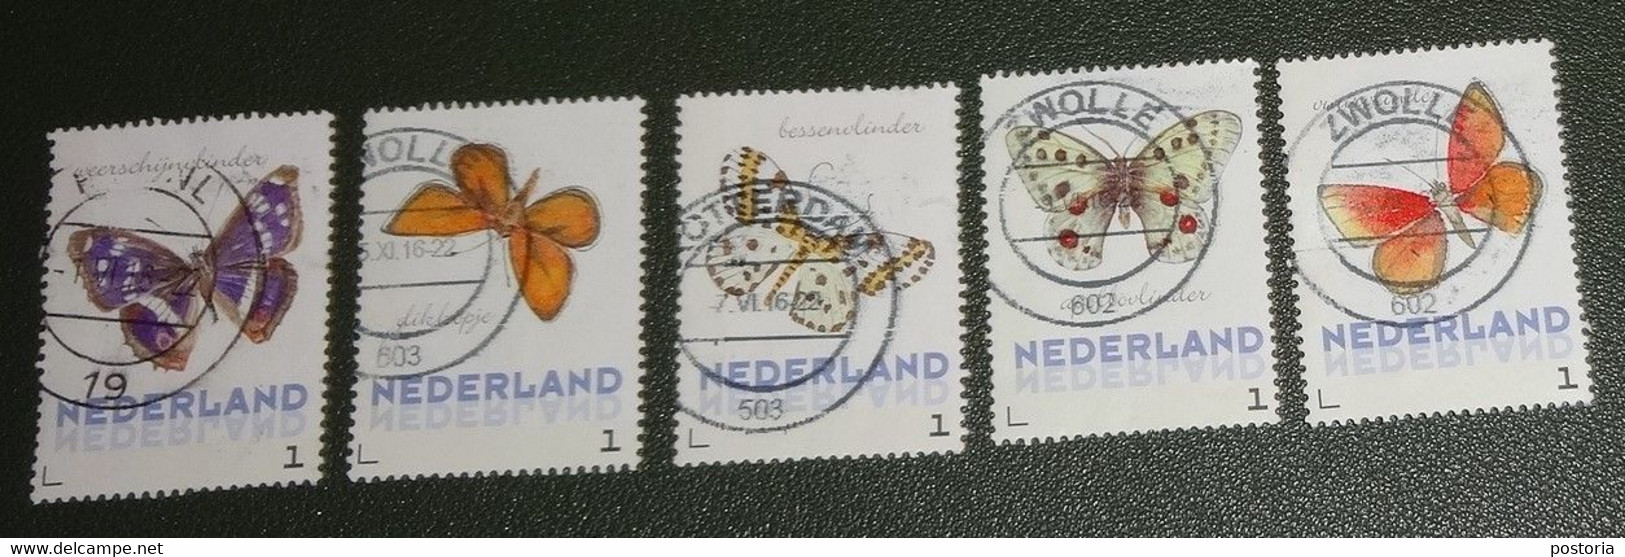 Nederland - NVPH - Uit 3012-Ac-4 - 2014 - Persoonlijke Gebruikt - Brinkman - Vlinders Zomer - Sellos Privados